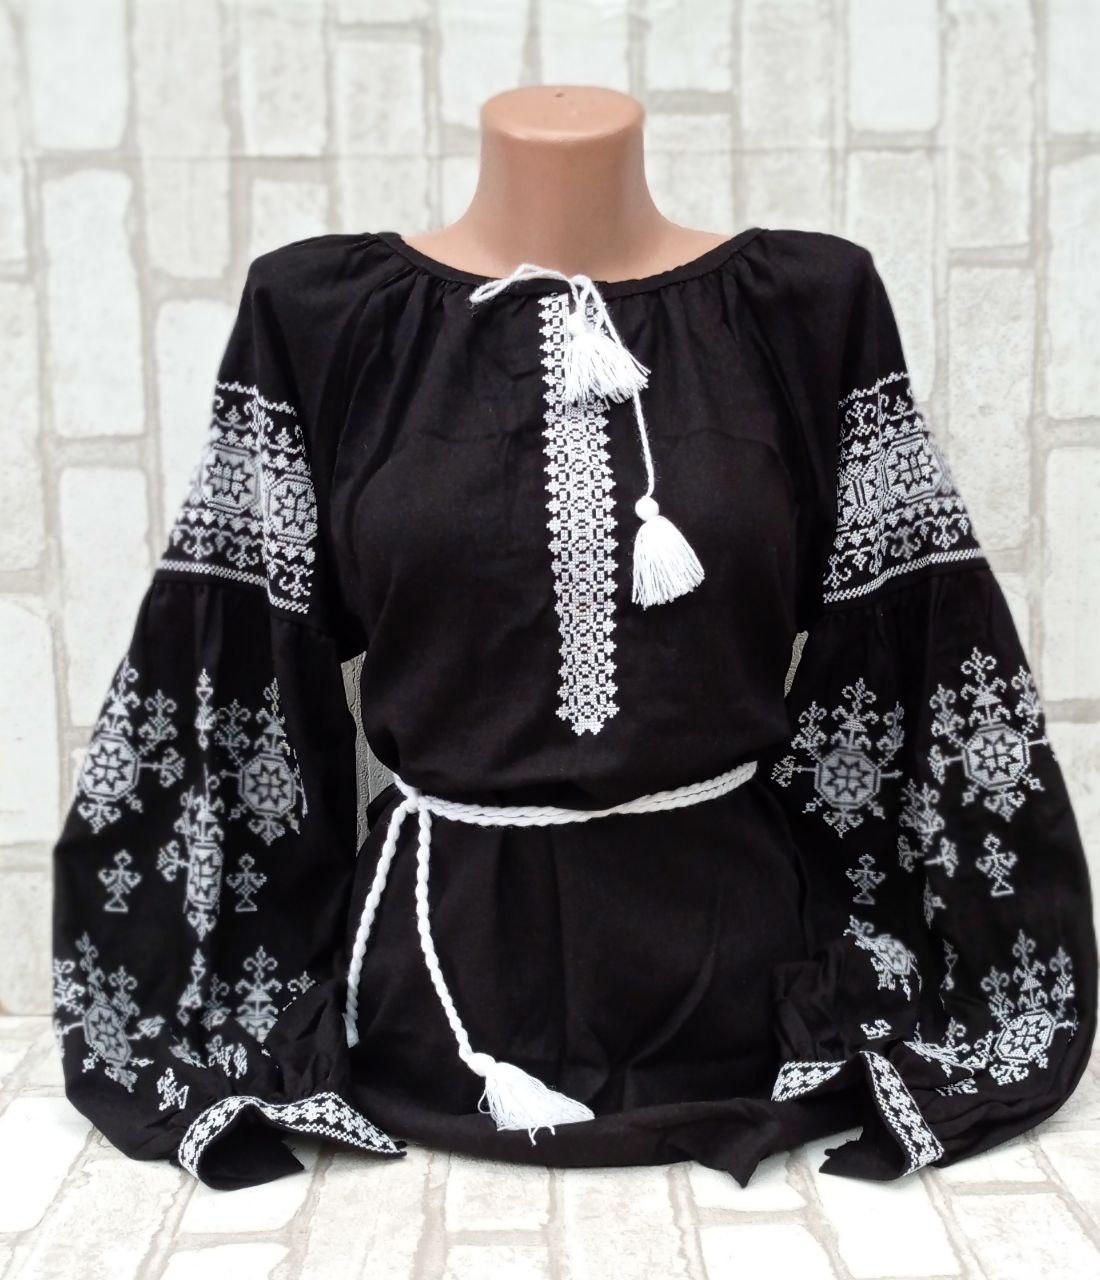 Жіноча блузка з вишивкою "Власта", натуральний льон, 40-62 р-ри